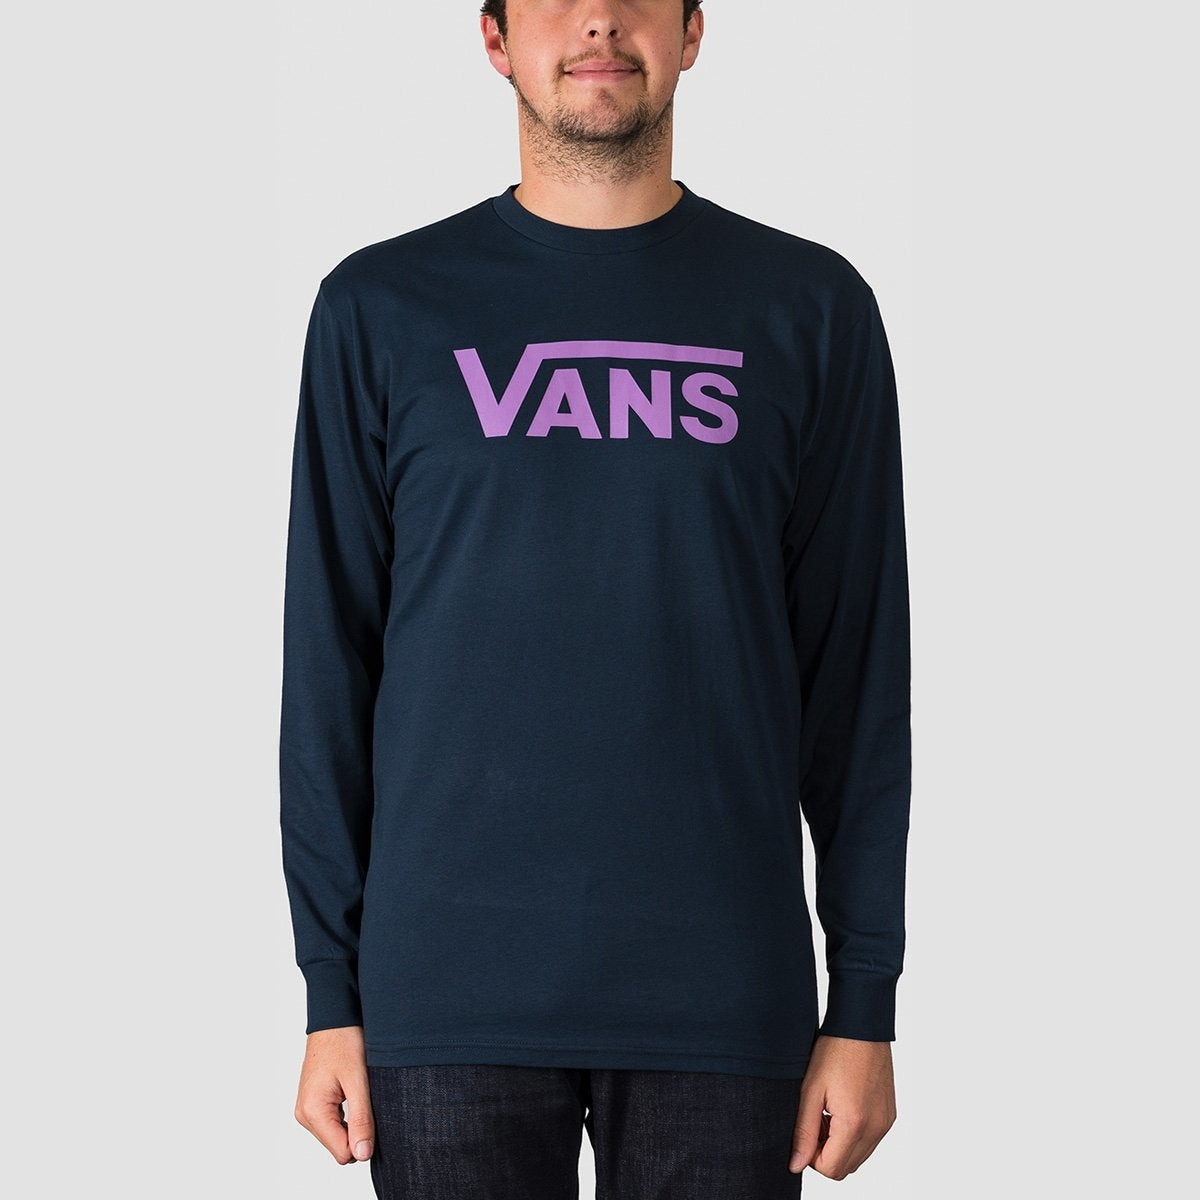 vans clothing uk Online Shopping for 